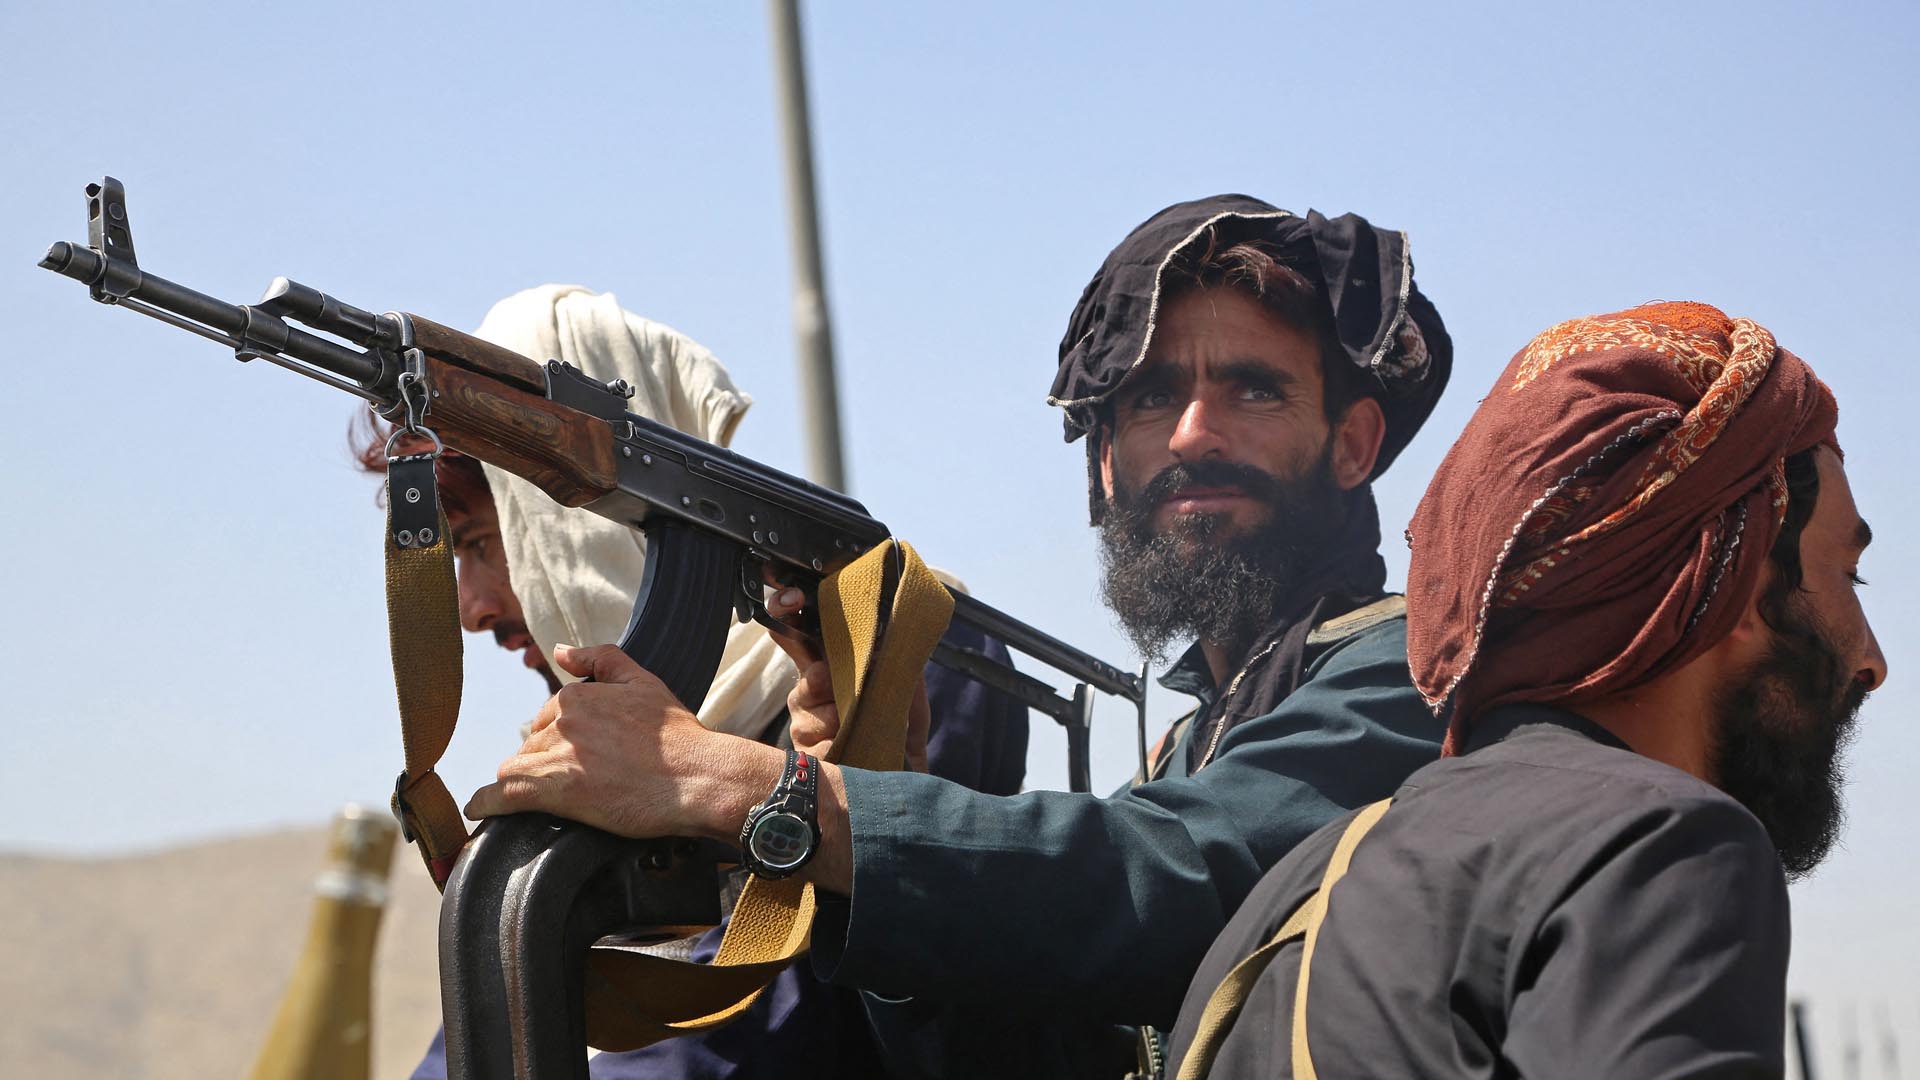 Claves del conflicto en Afganistán: los talibanes recuperan el poder 20 años después